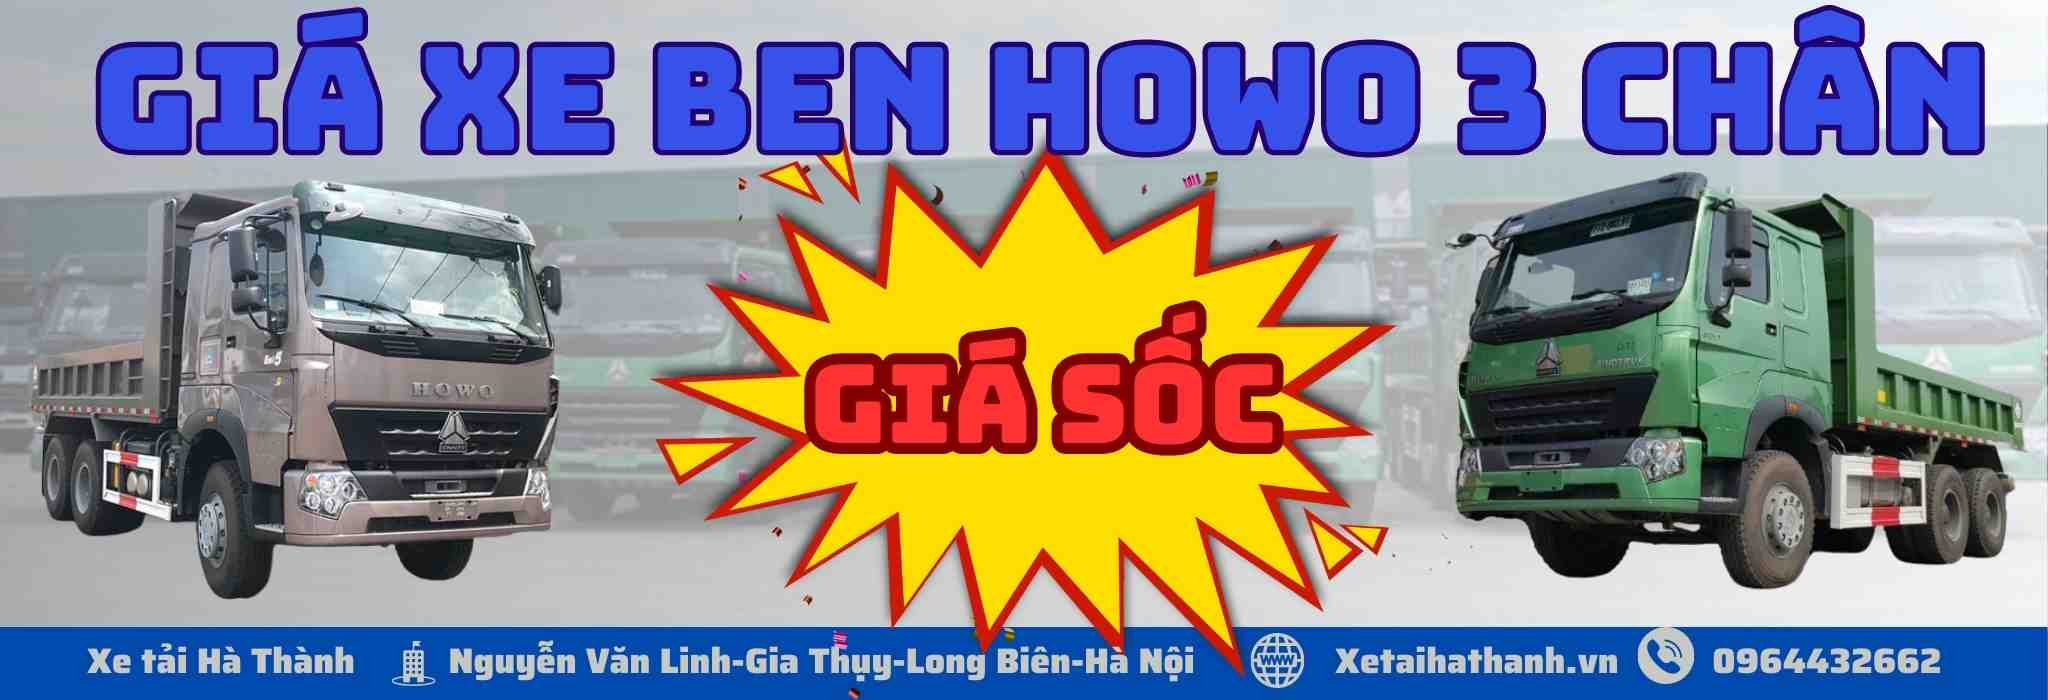 gia-xe-ben-howo-3-chan-thung-vuong